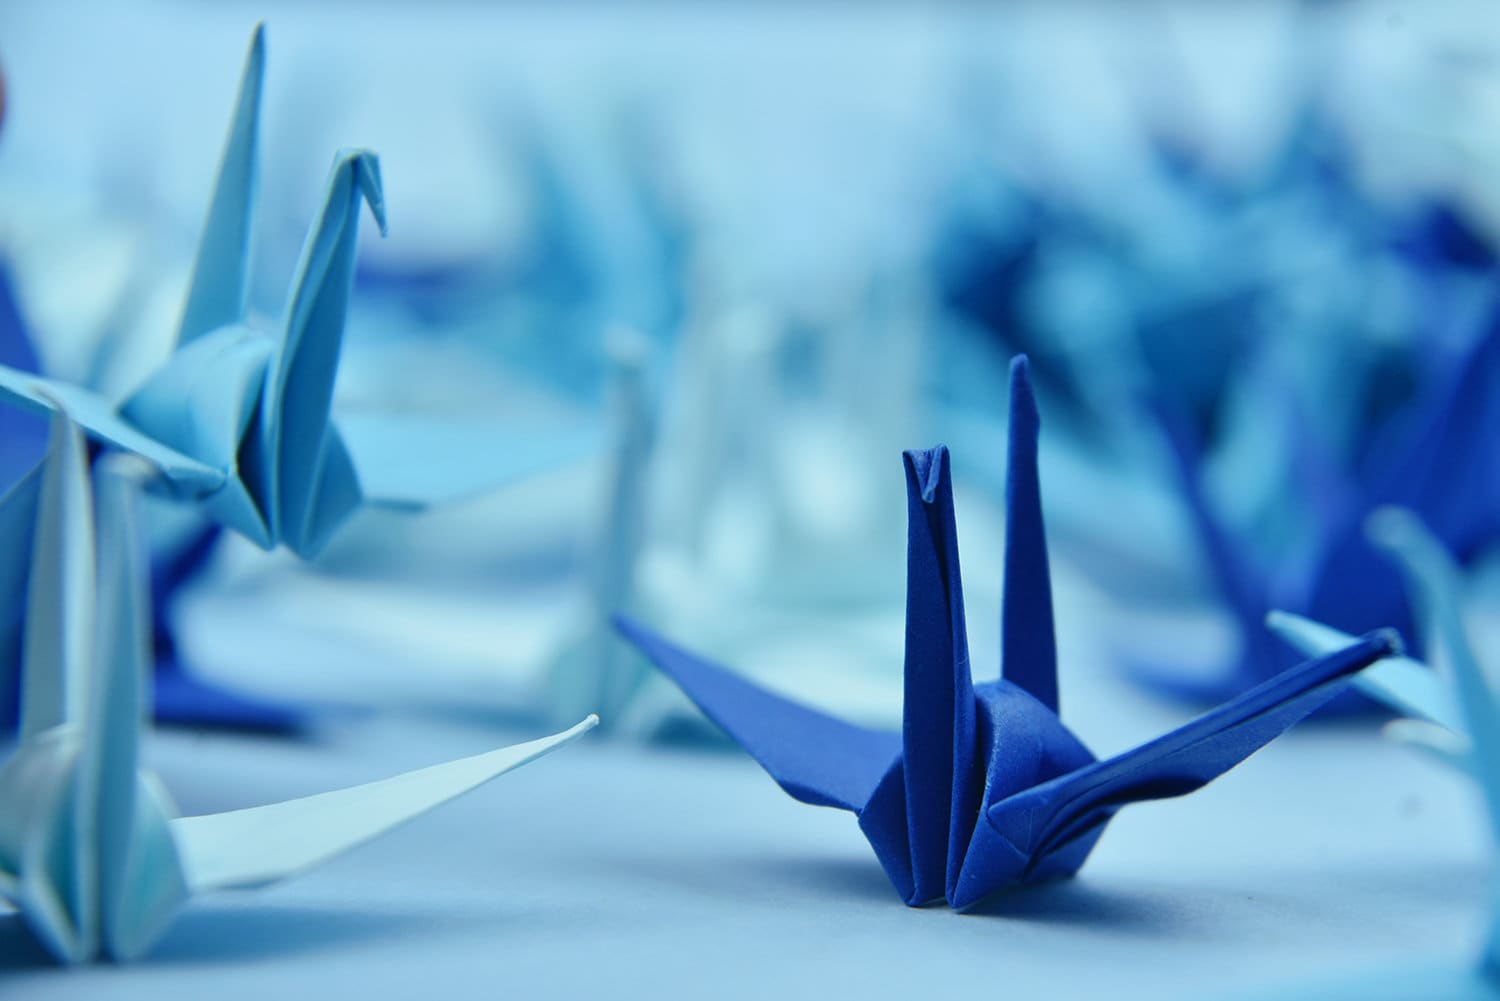 1000 gru di carta origami blu navy da 3 pollici 7,5 cm gru origami - Origamipolly - prefabbricate per la decorazione giapponese di nozze di Natale